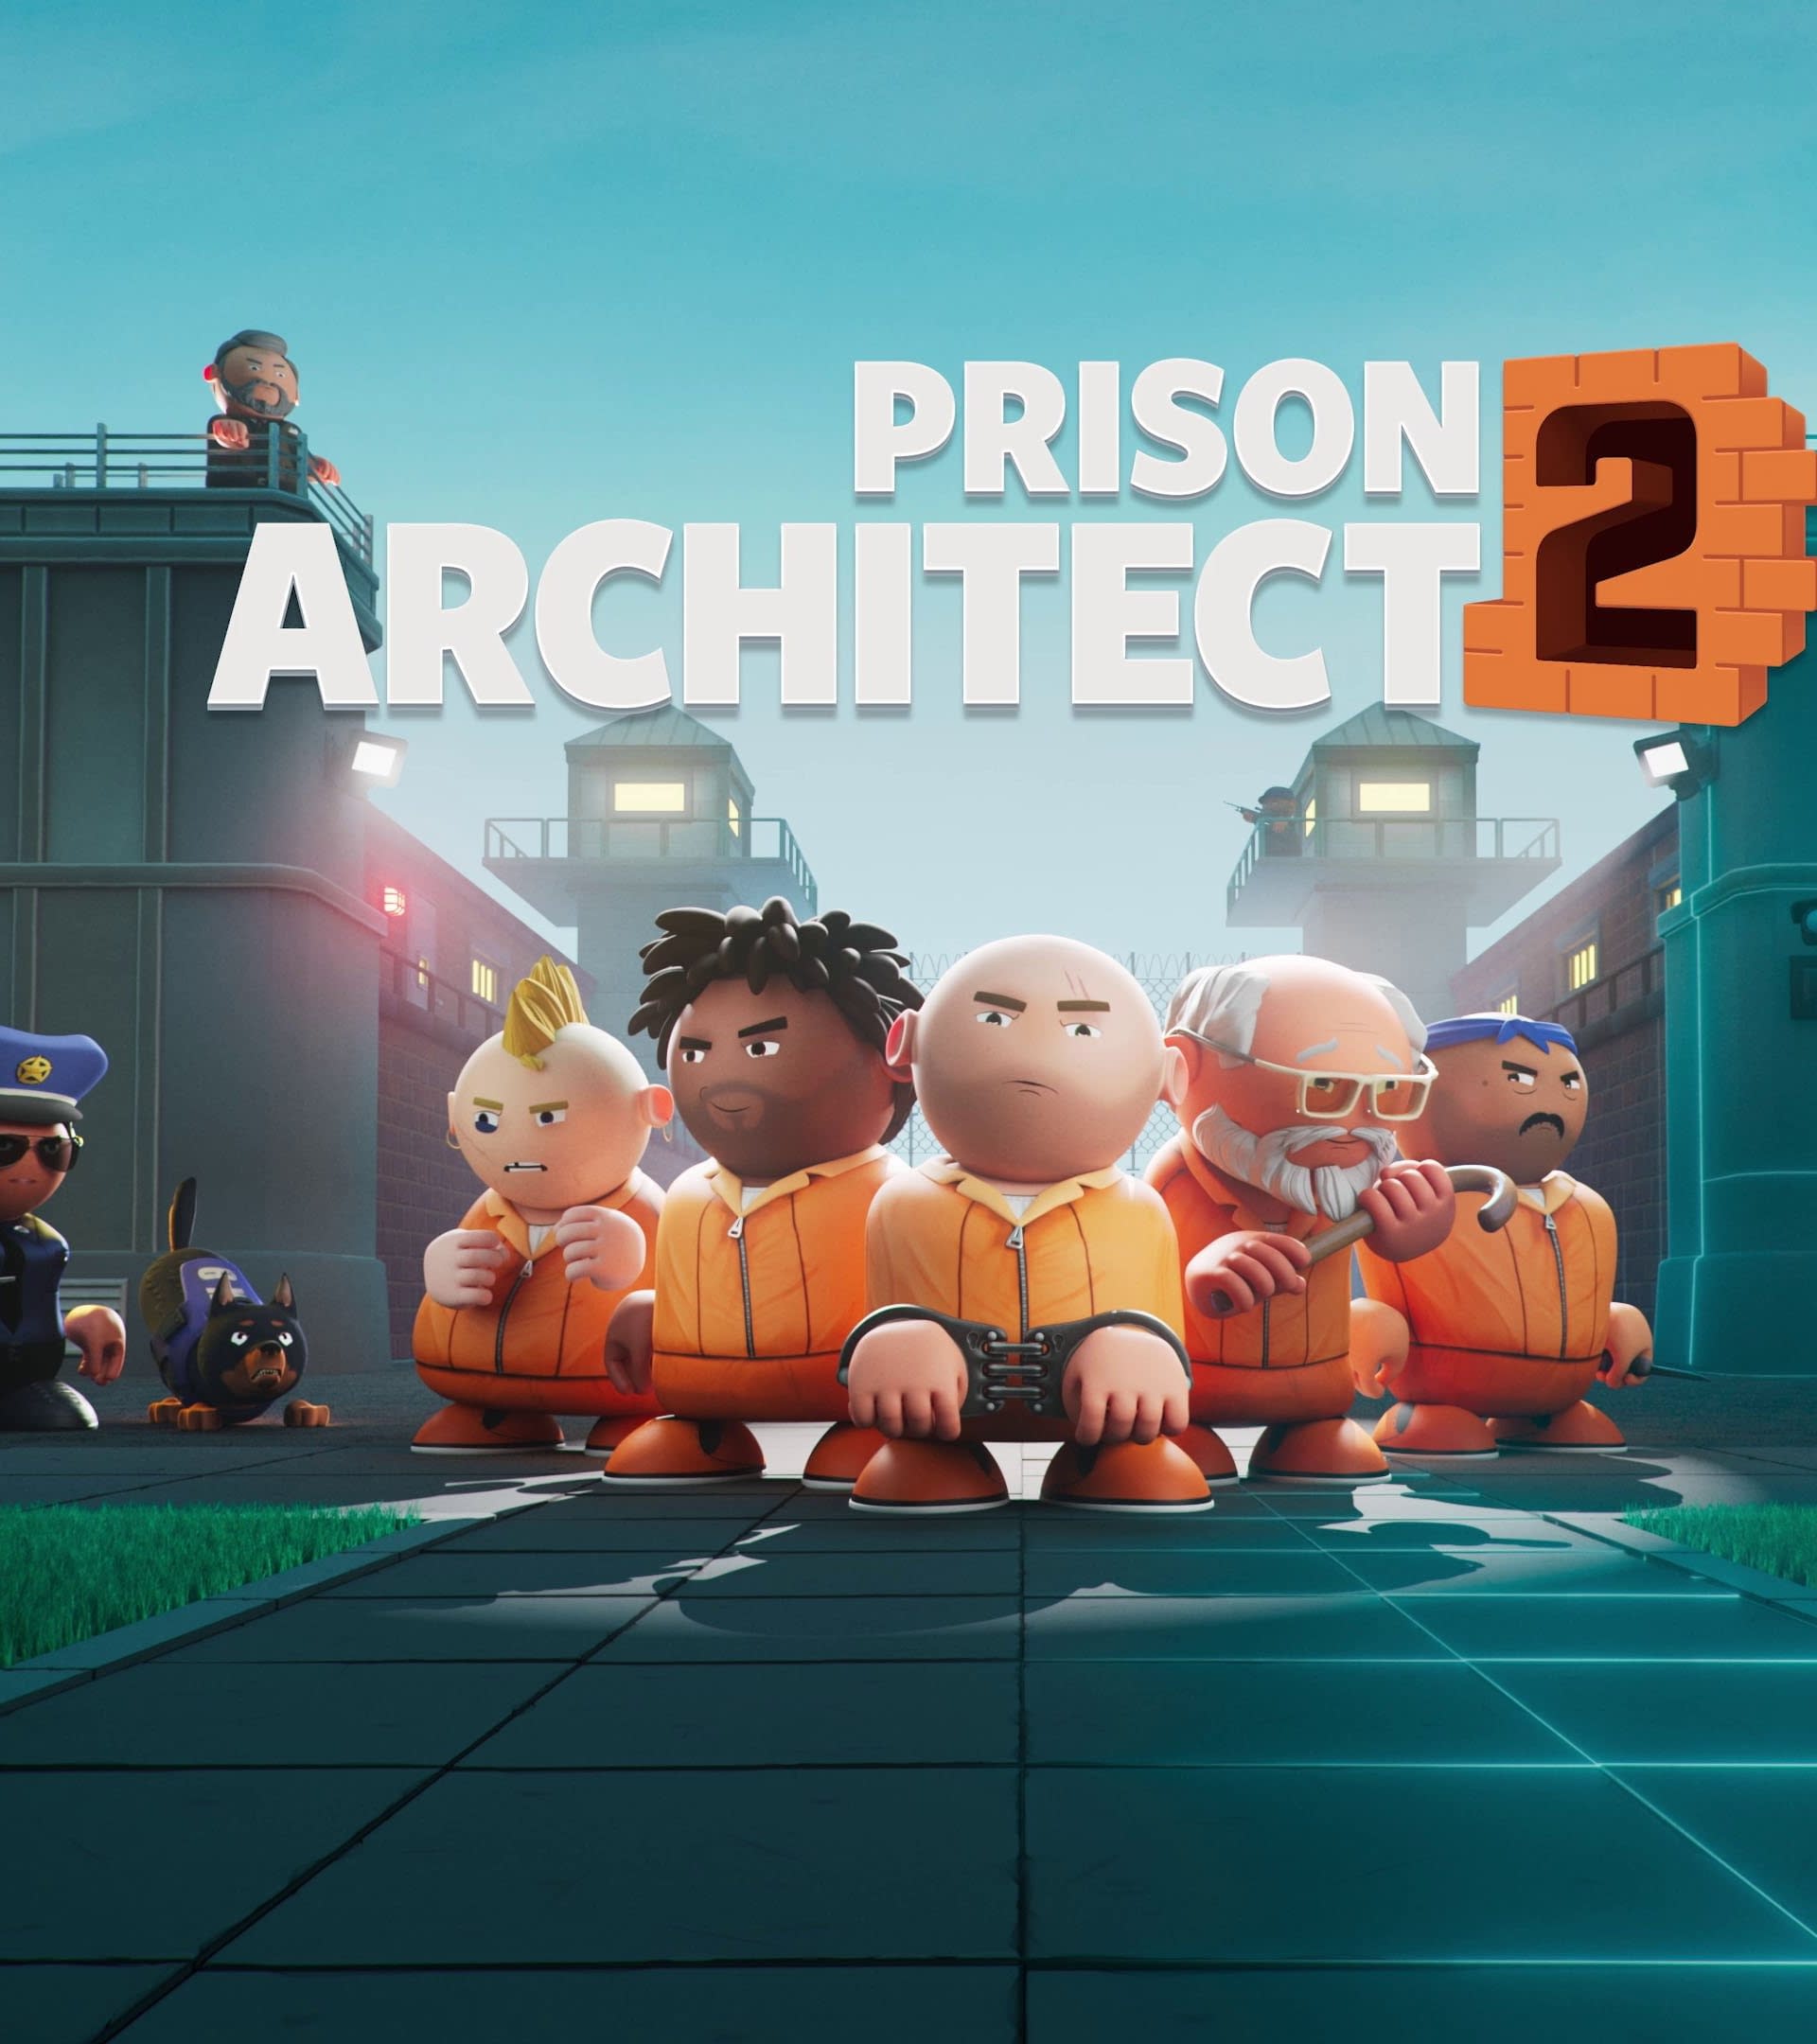 Prison Architect 2 Official Announcement